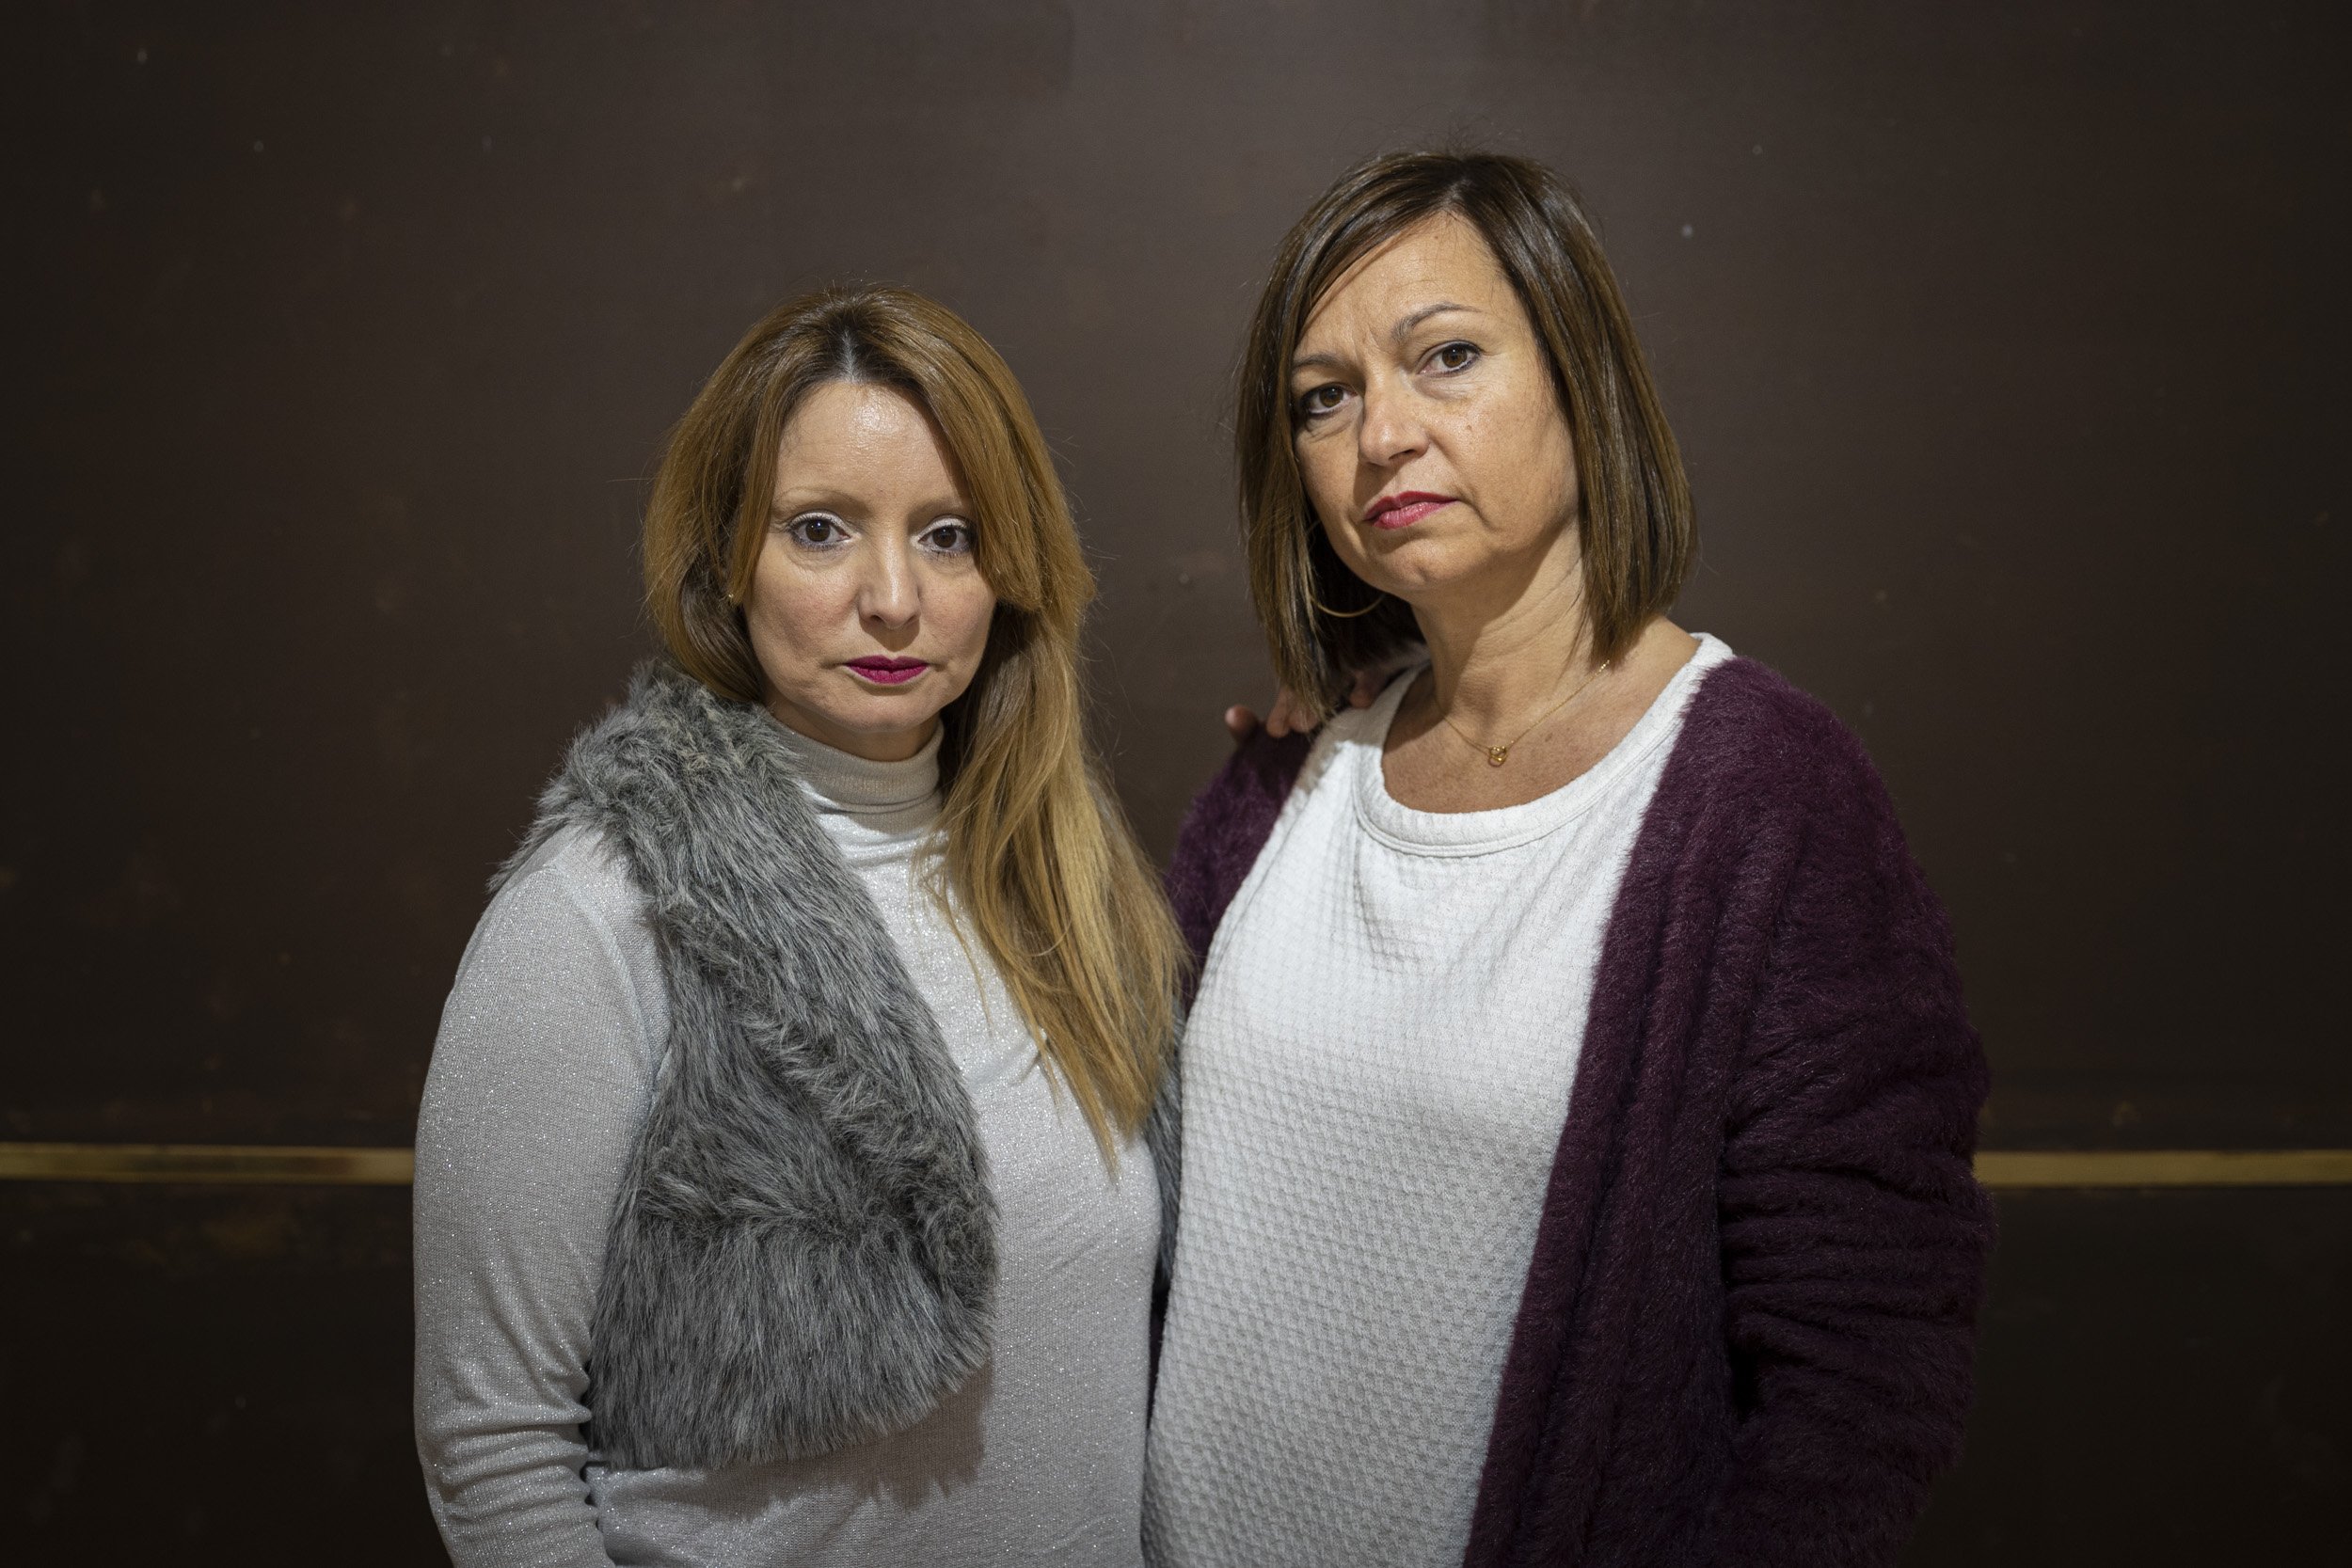 Dos madres reclaman a los tribunales que les devuelvan a los hijos "arrancados" por violencia institucional